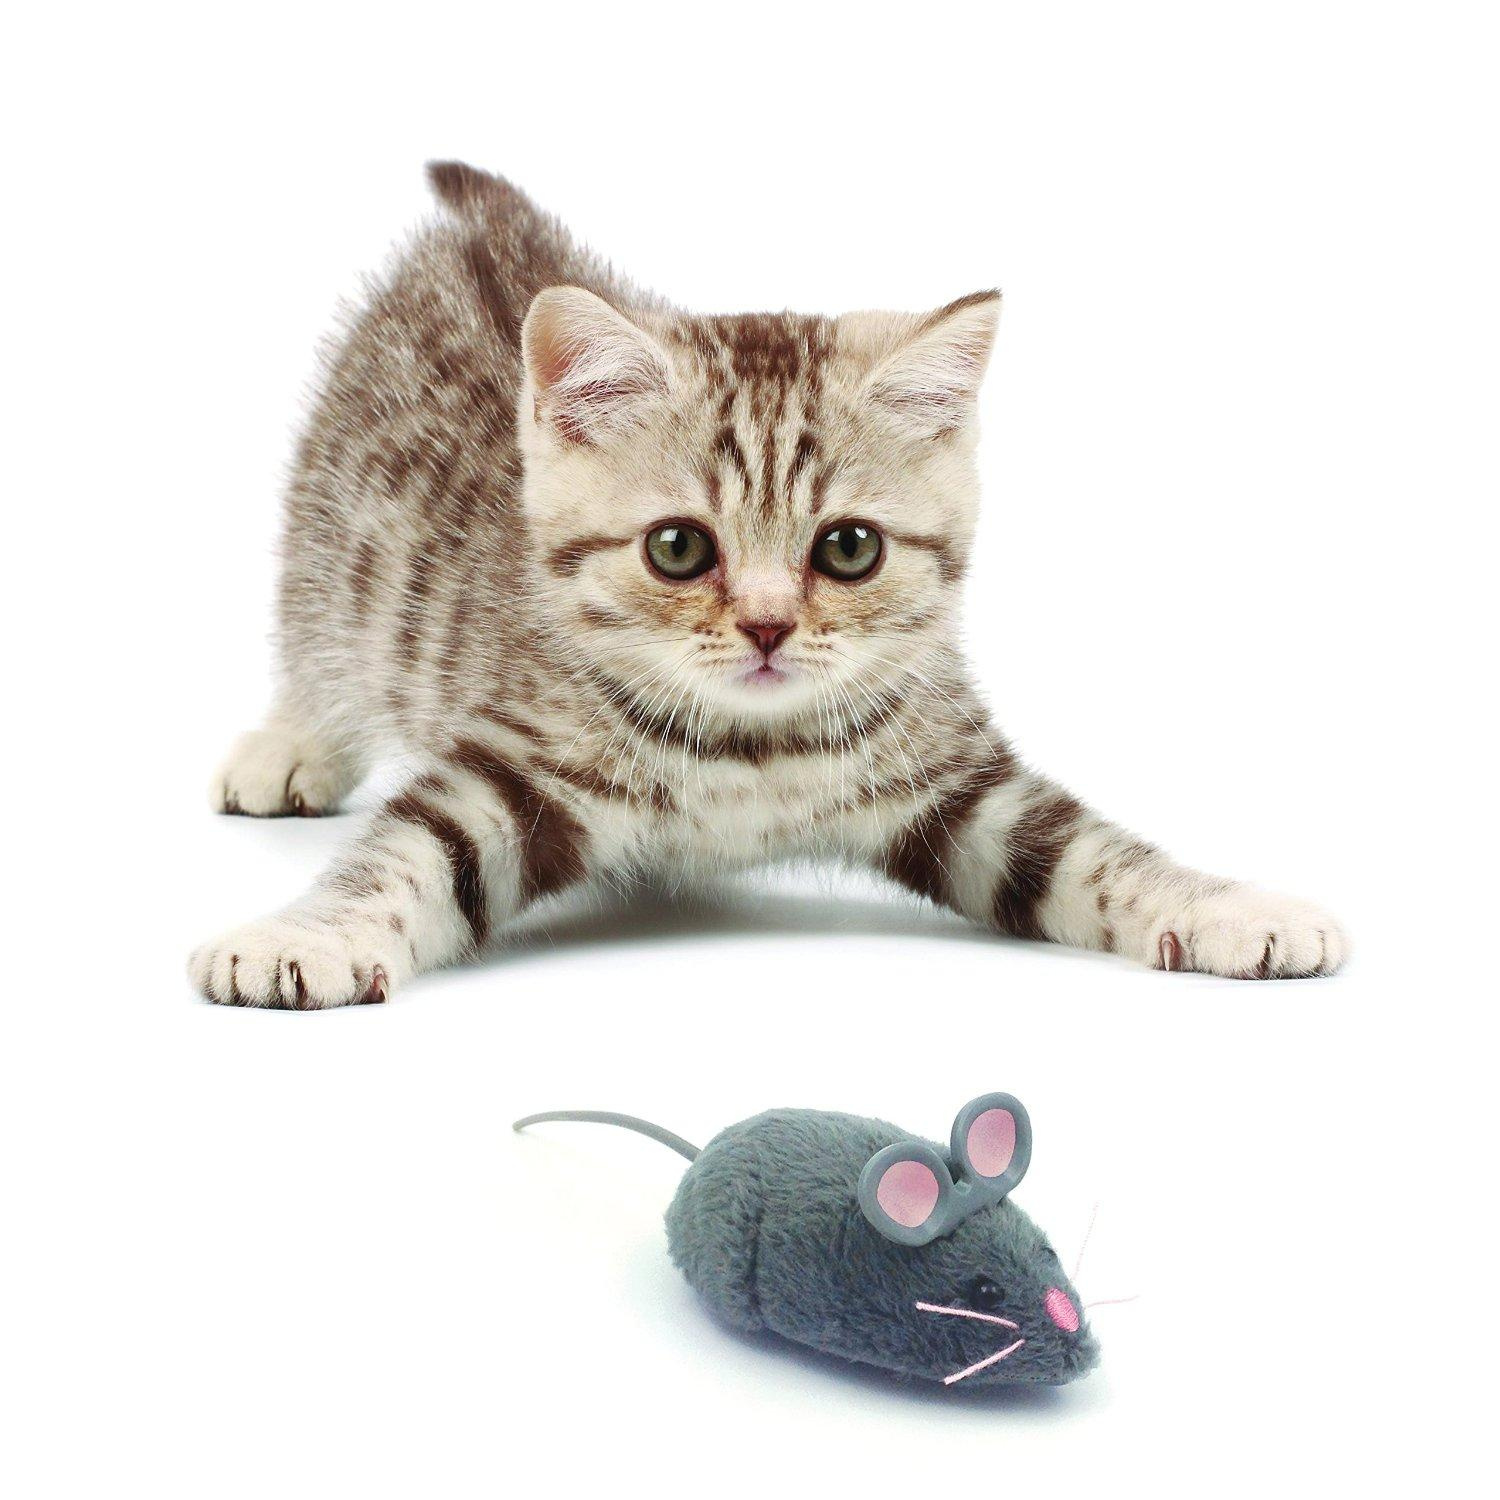 Игрушка для кошек Hexbug Mouse Cat Toy, микроробот, серый, 6,2 см